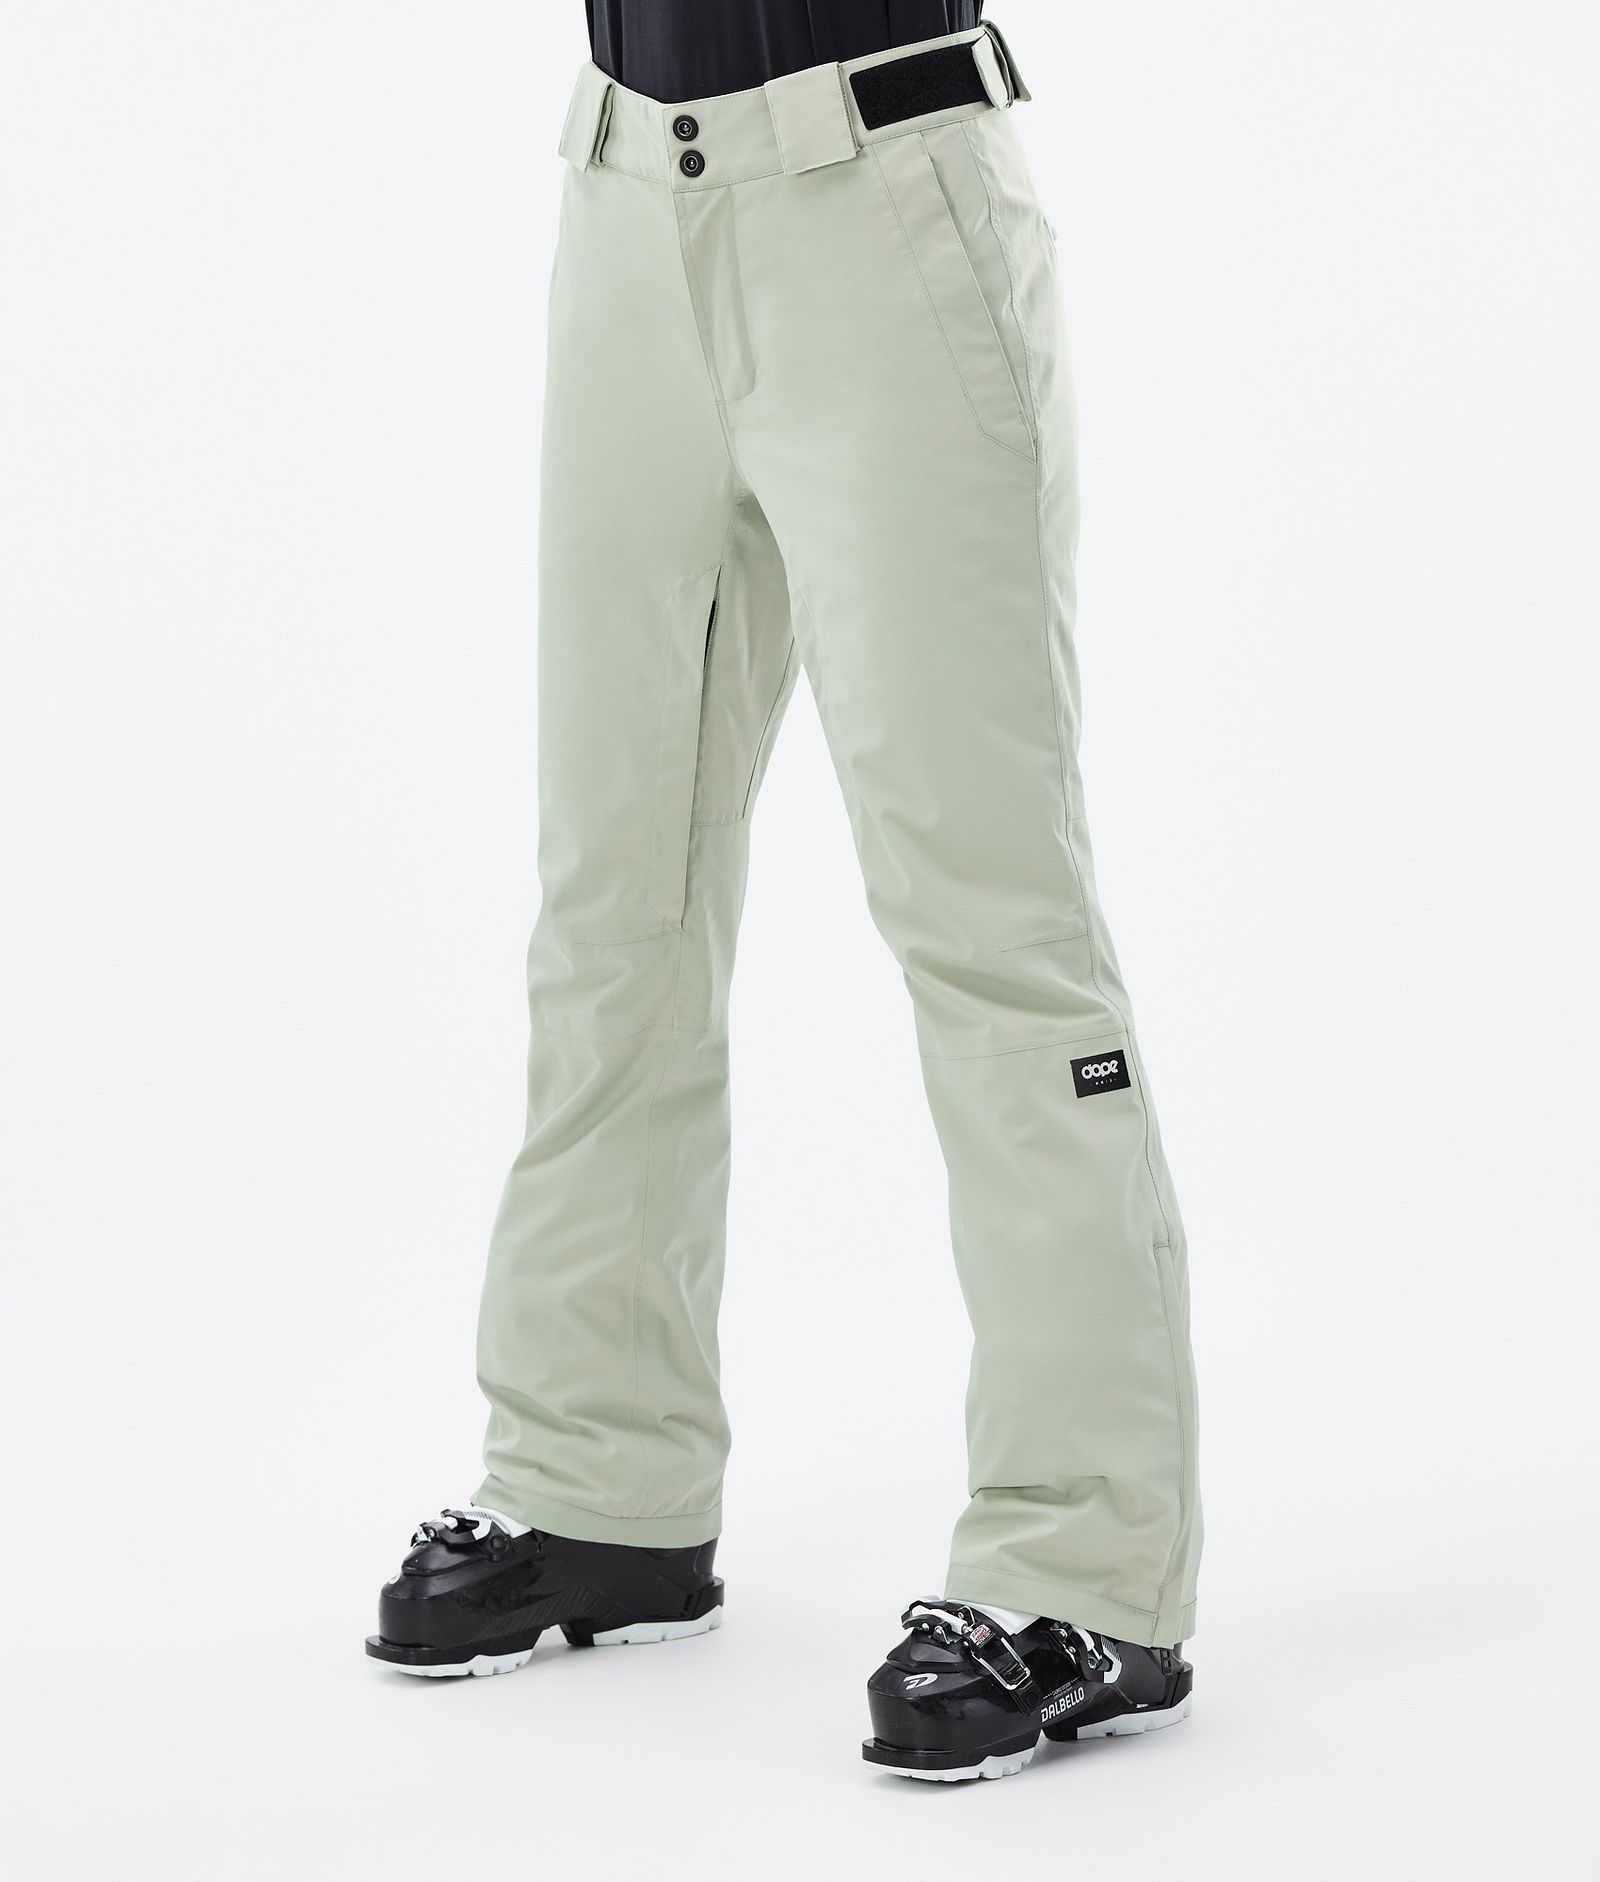 Con W 2022 Ski Pants Women Soft Green